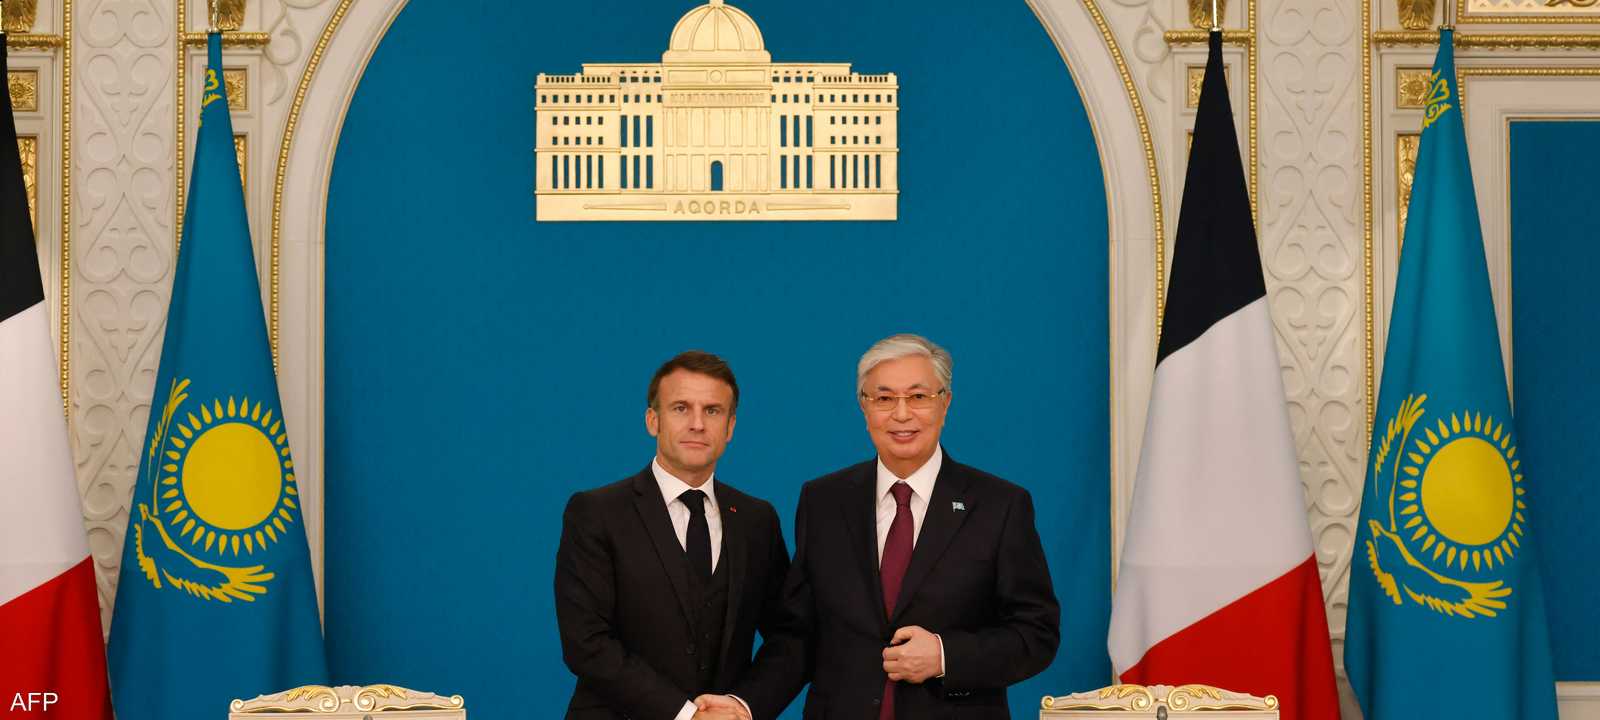 الرئيس الفرنسي إيمانويل ماكرون ورئيس كازاخستان قاسم توكاييف